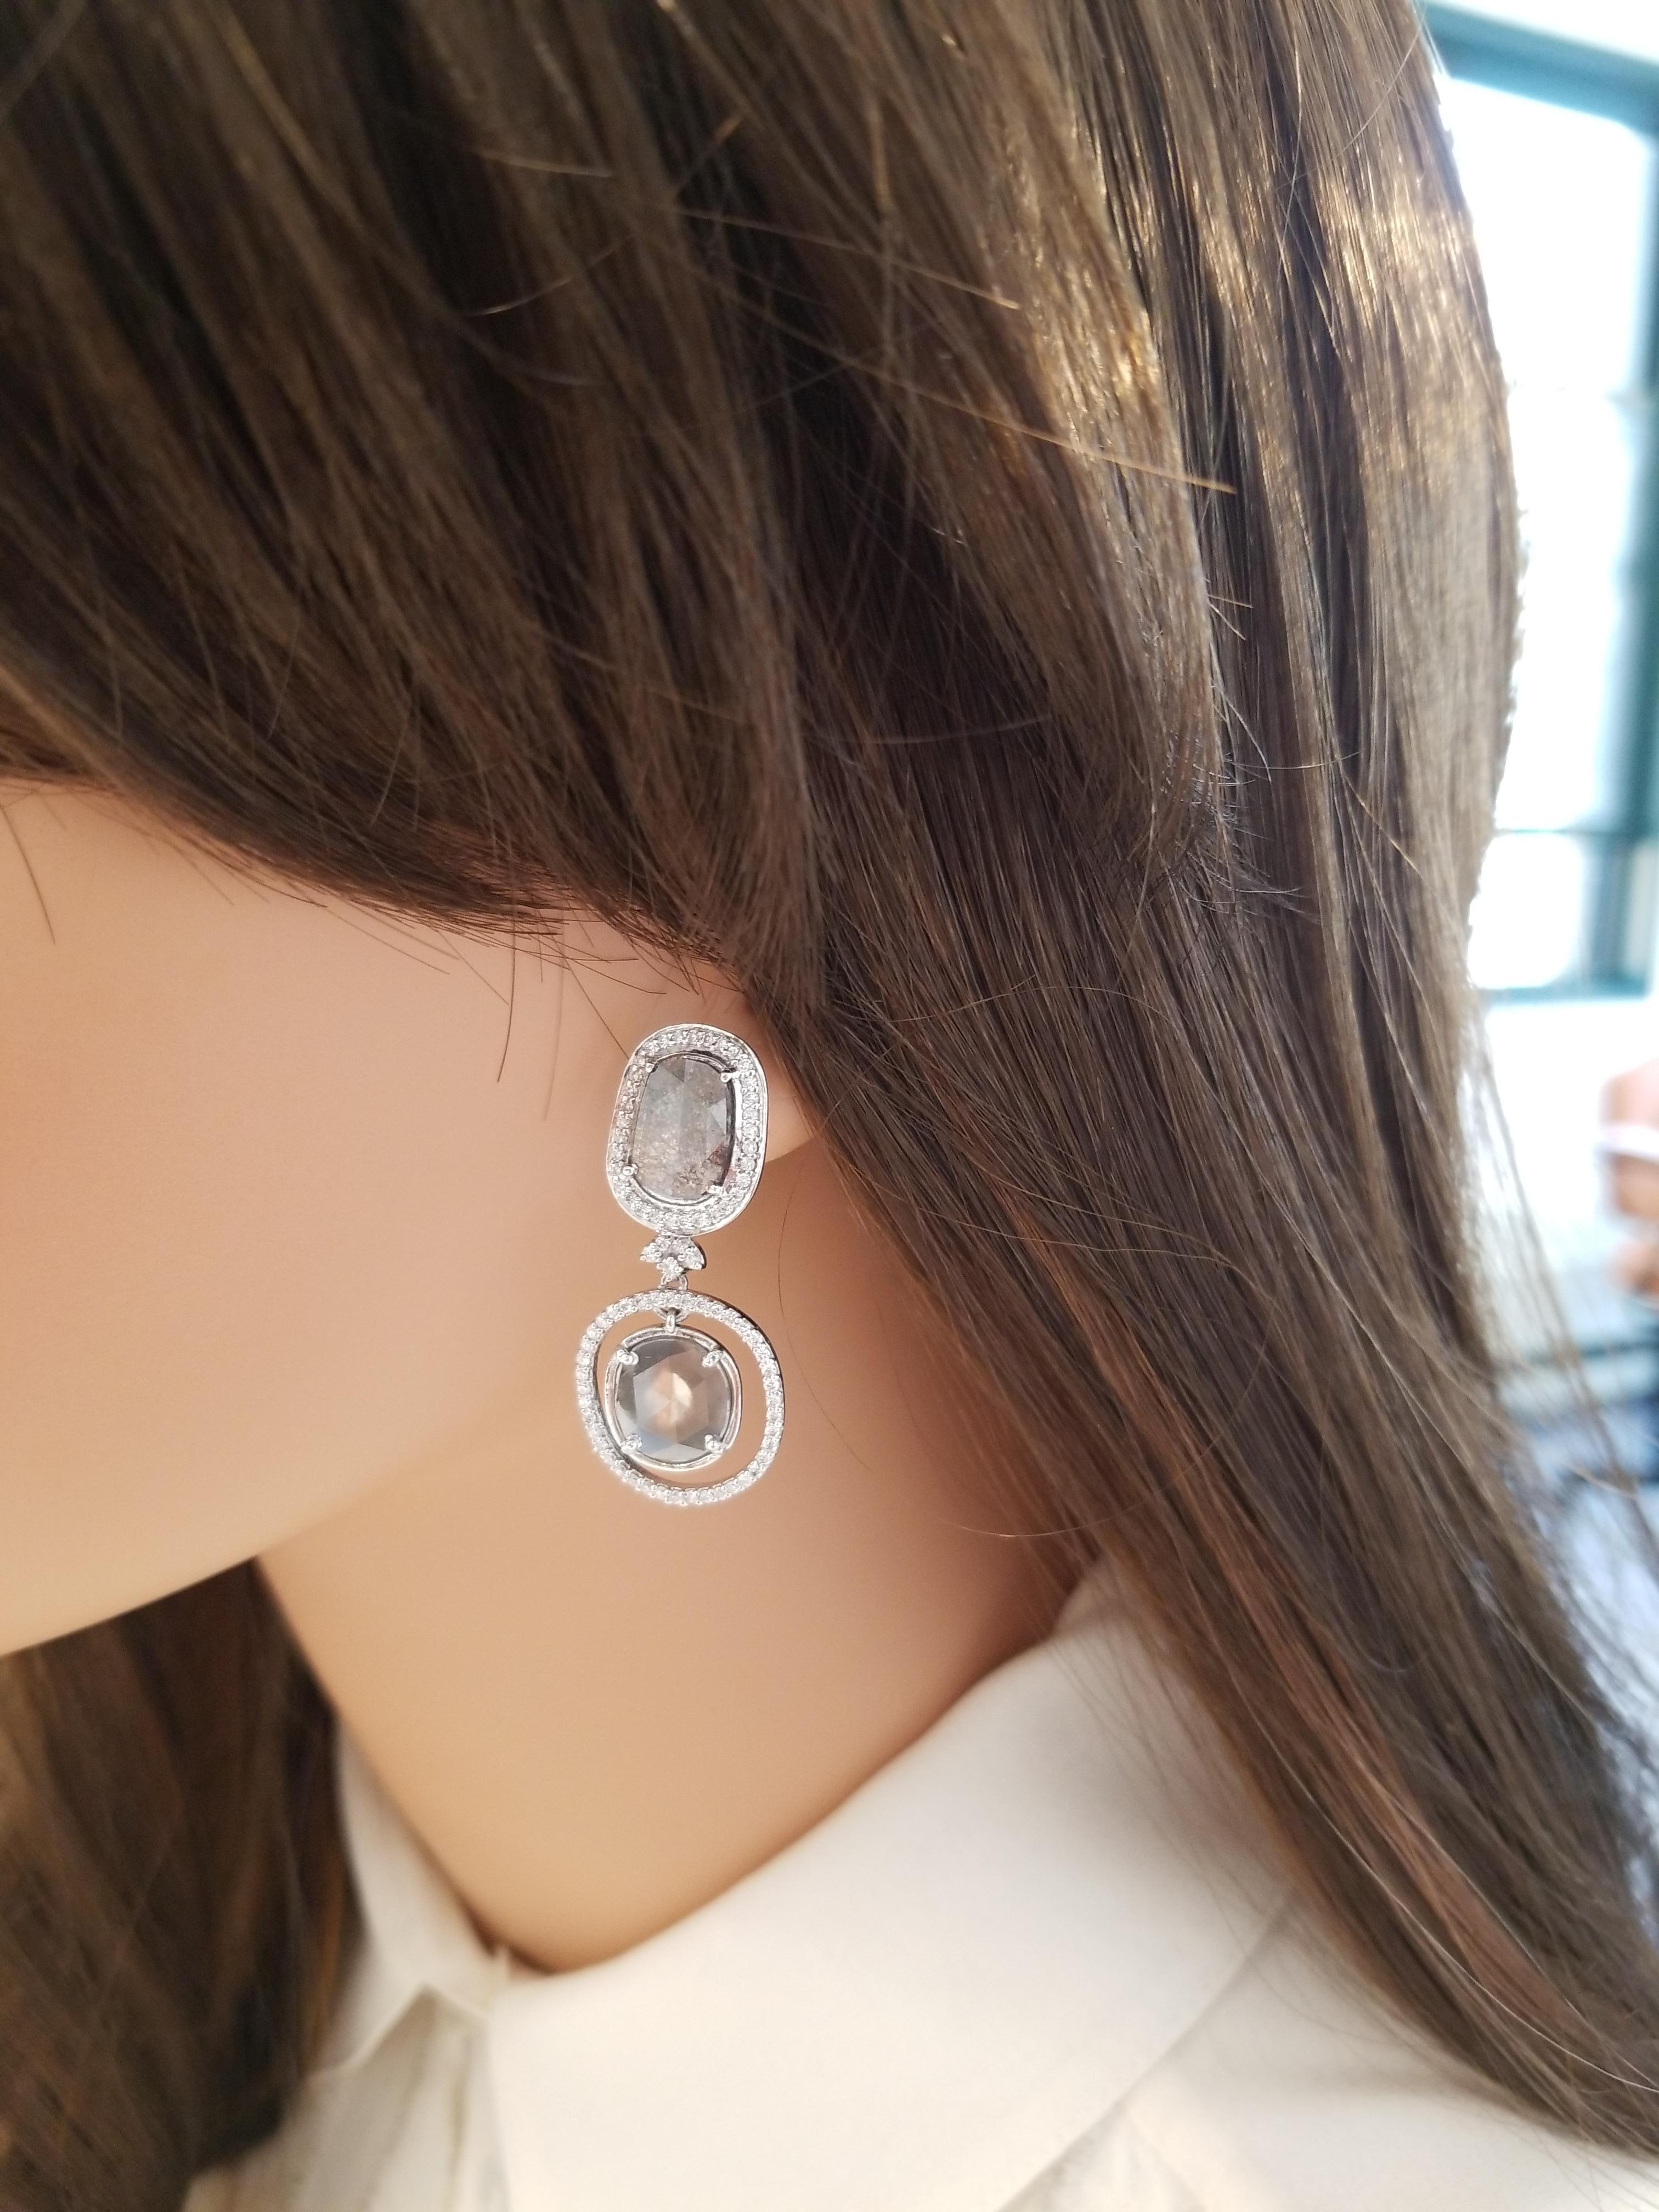 Diese Ohrringe sind mit 4 schimmernden, facettierten schwarzen Diamanten von insgesamt 4,21 Karat besetzt. Diese Diamanten werden von funkelnden weißen Diamanten mit rundem Brillantschliff umrahmt, die in Zacken gefasst sind und einen schillernden